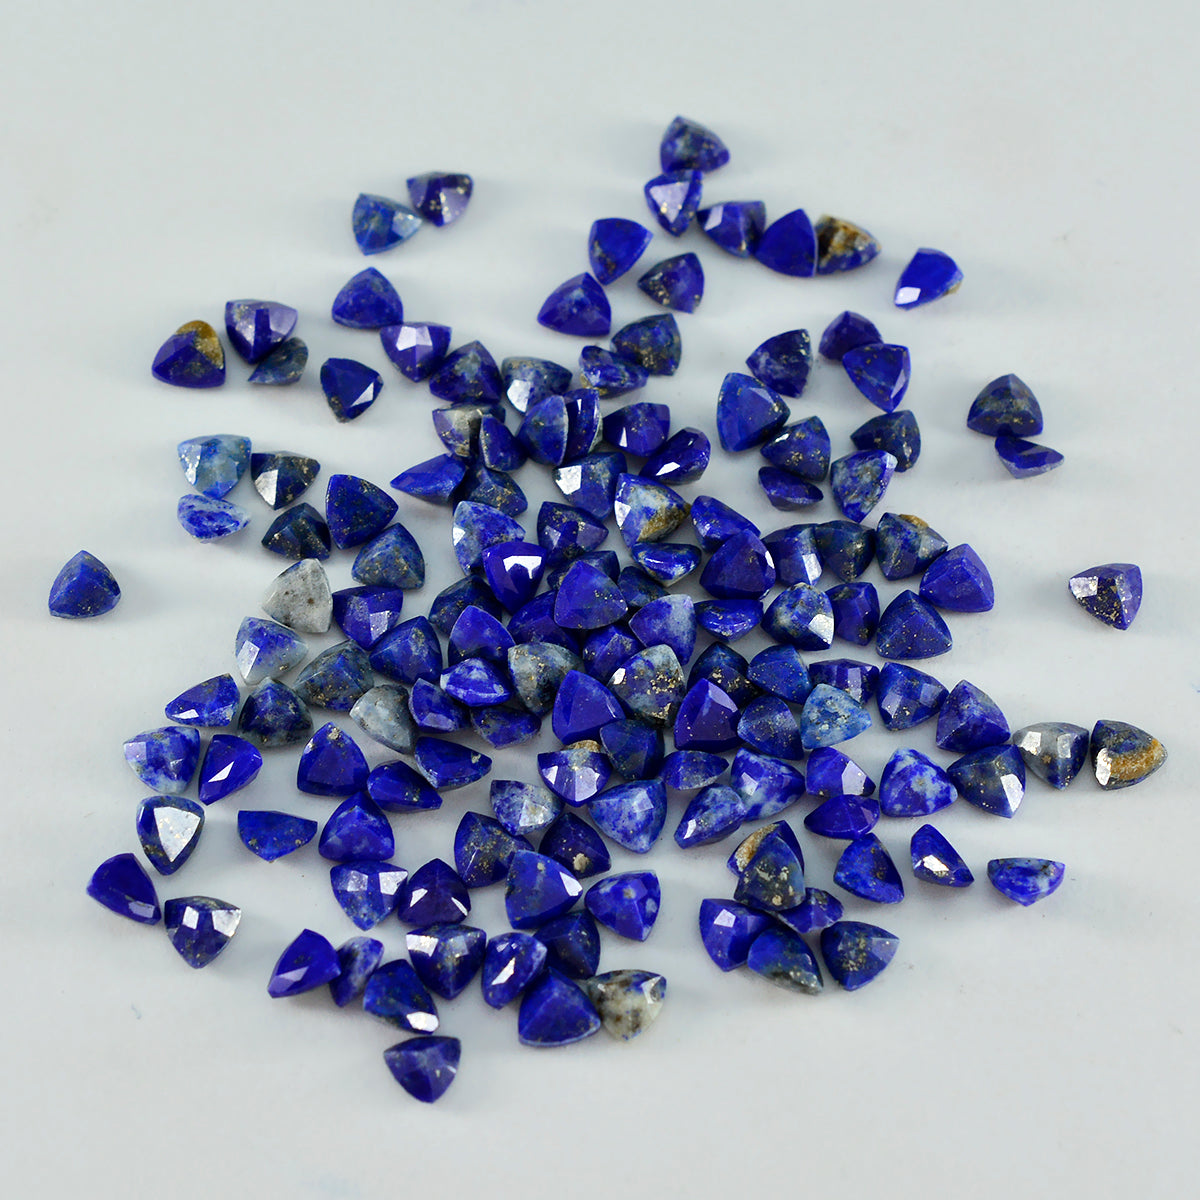 Riyogems 1 Stück echter blauer Lapislazuli, facettiert, 4 x 4 mm, Billionenform, süßer Qualitätsstein